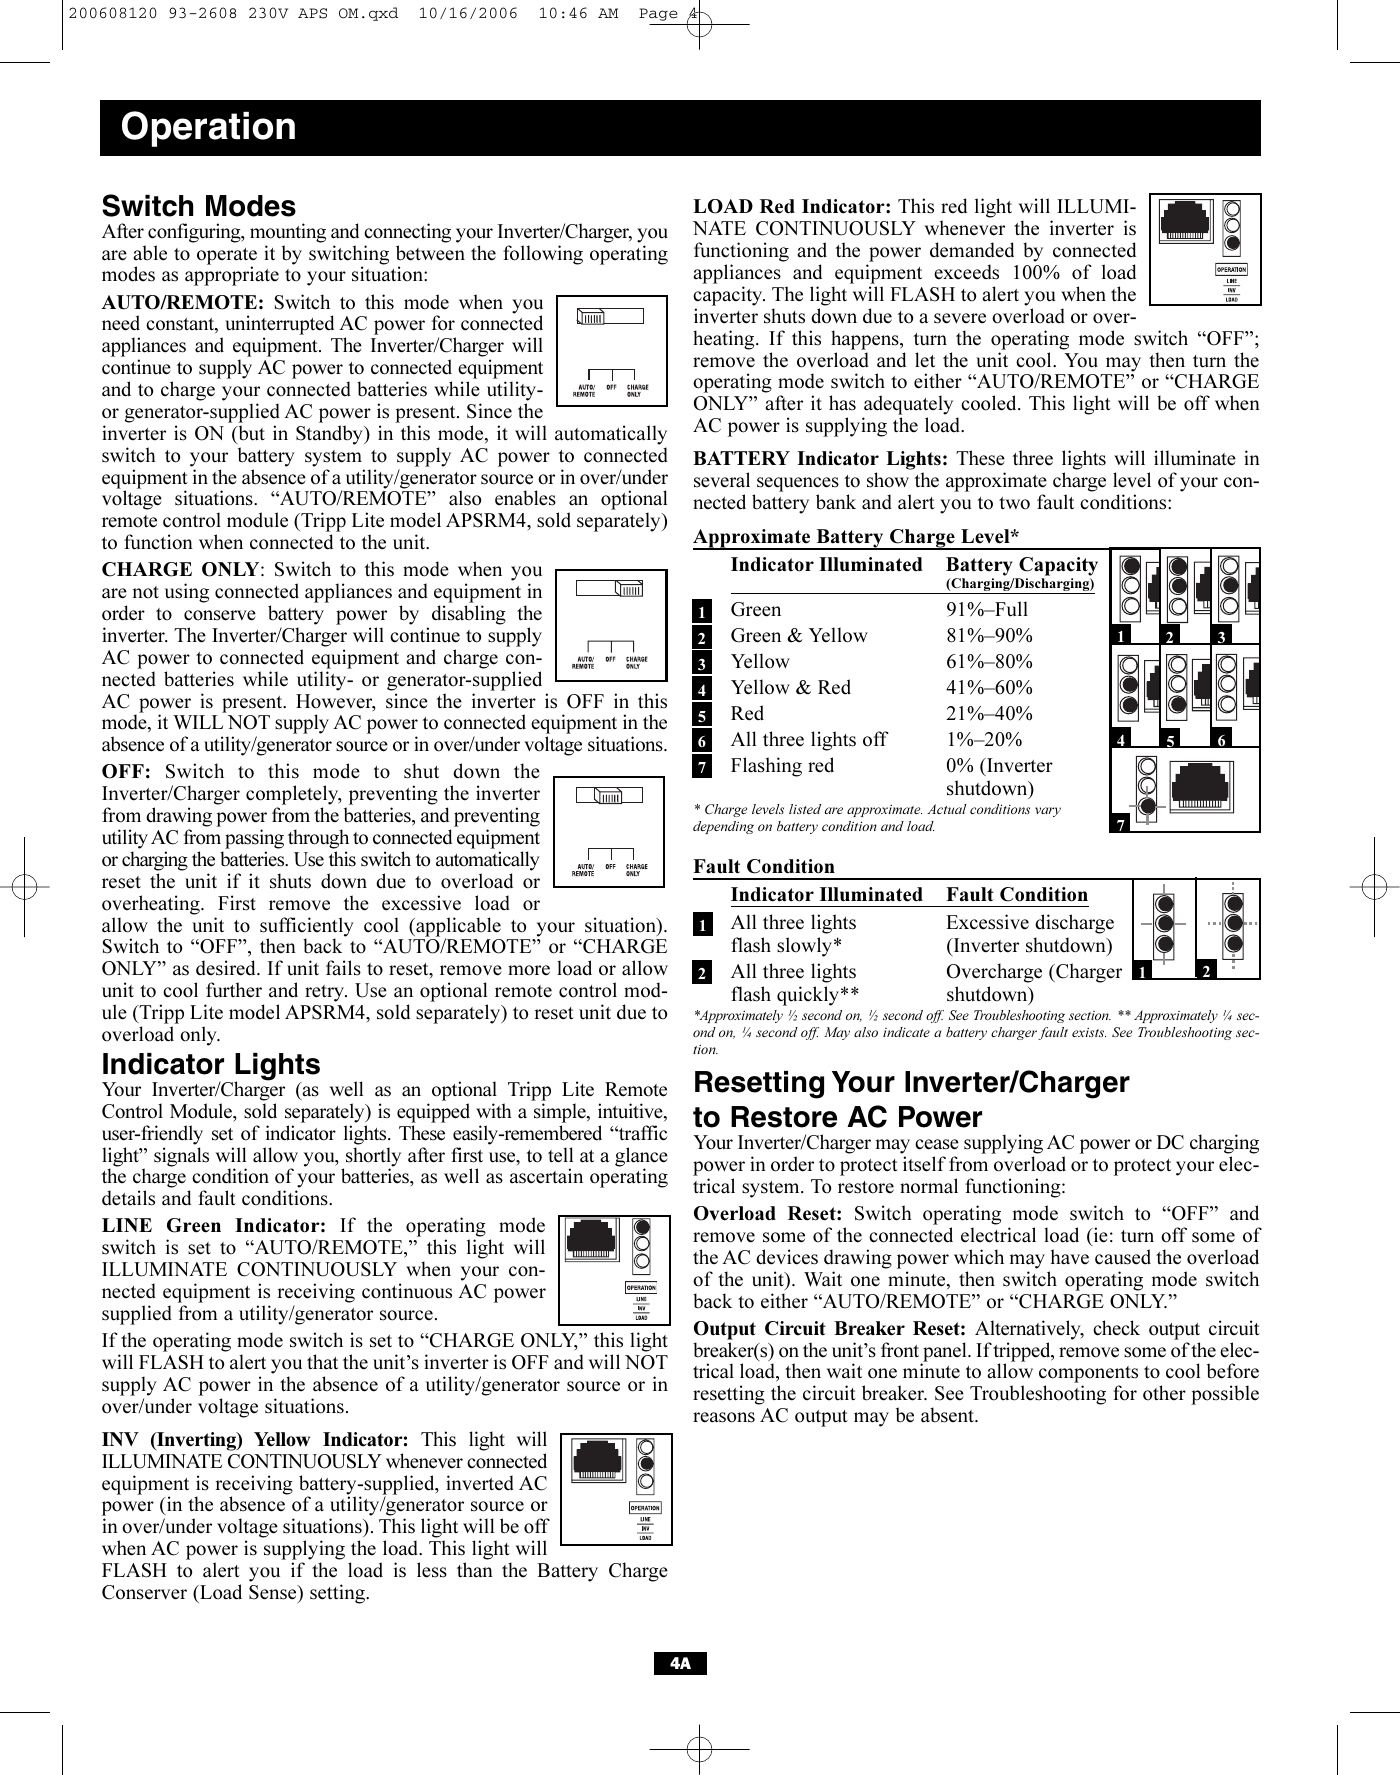 Tripp Lite Apsint Series Users Manual 200608120 93 2609 230V APS OM